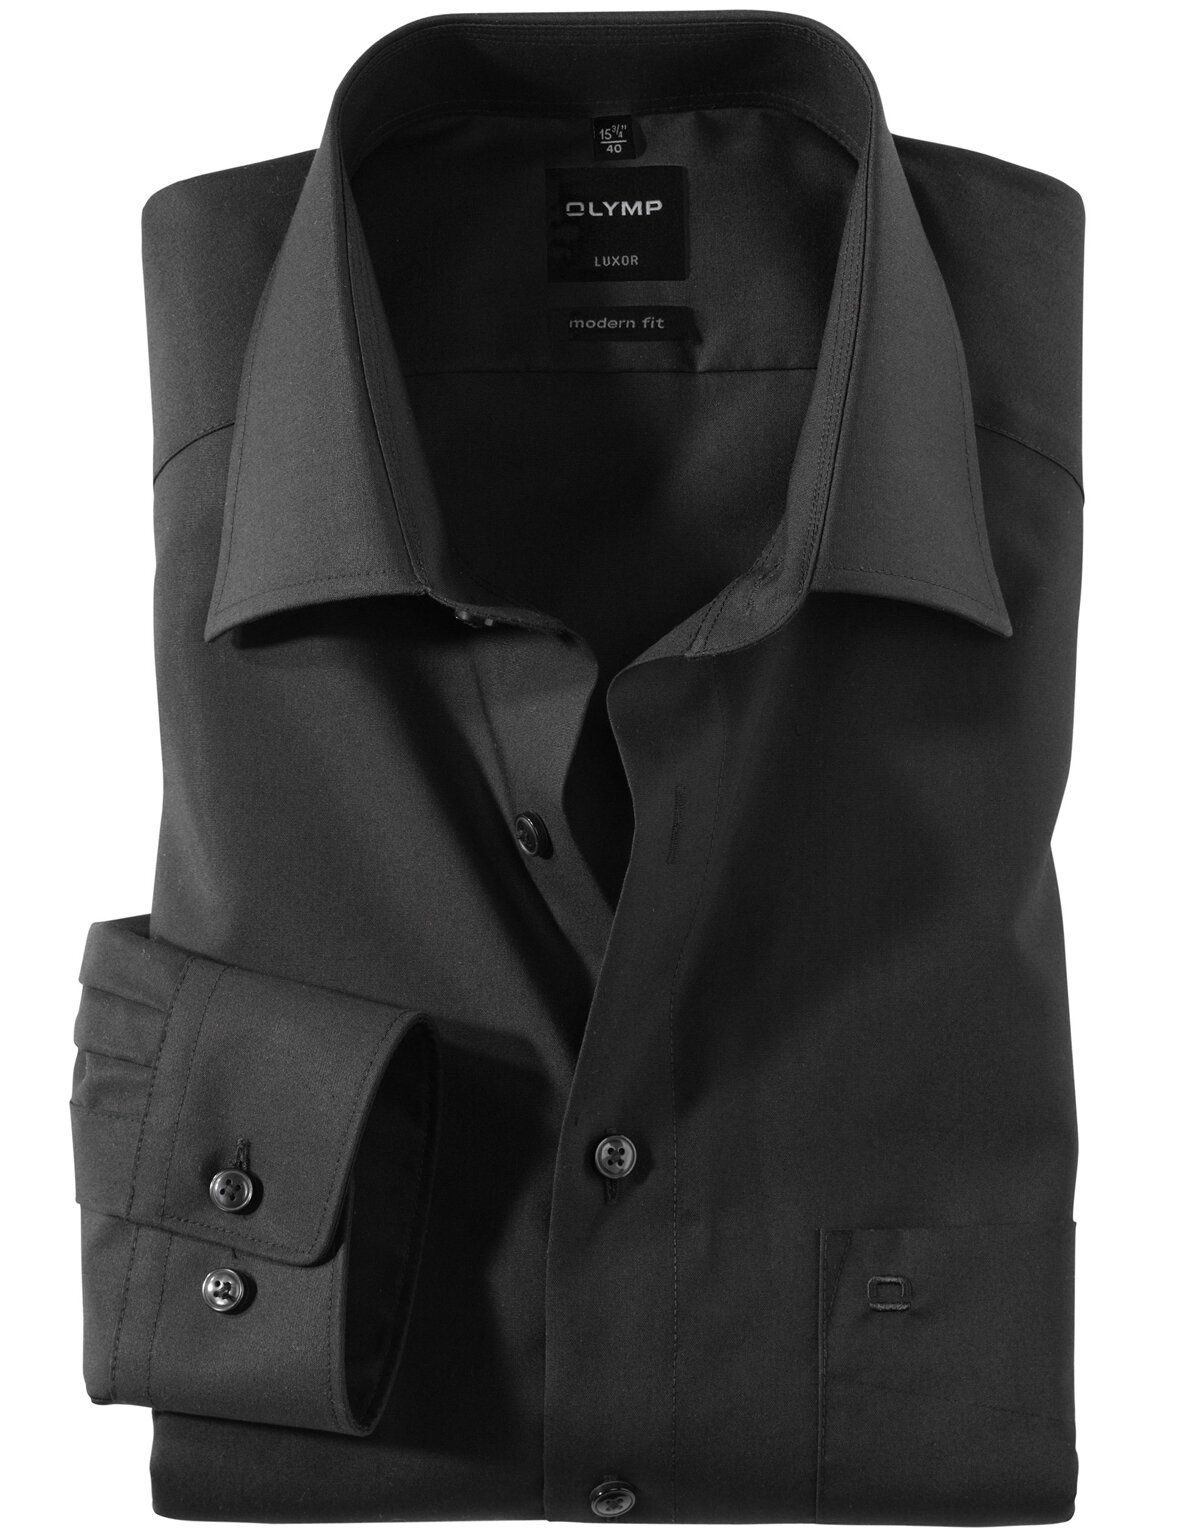 Классическая сорочка OLYMP Luxor, modern fit[Черный]